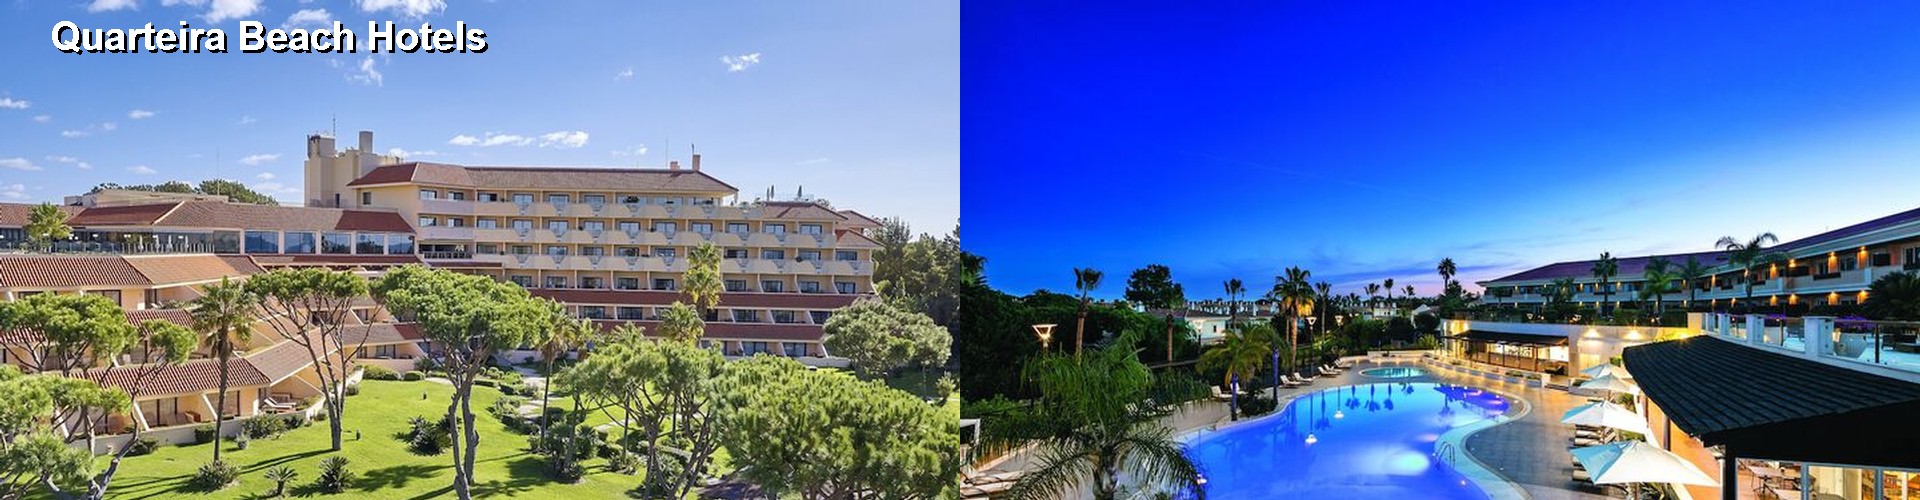 5 Best Hotels near Quarteira Beach